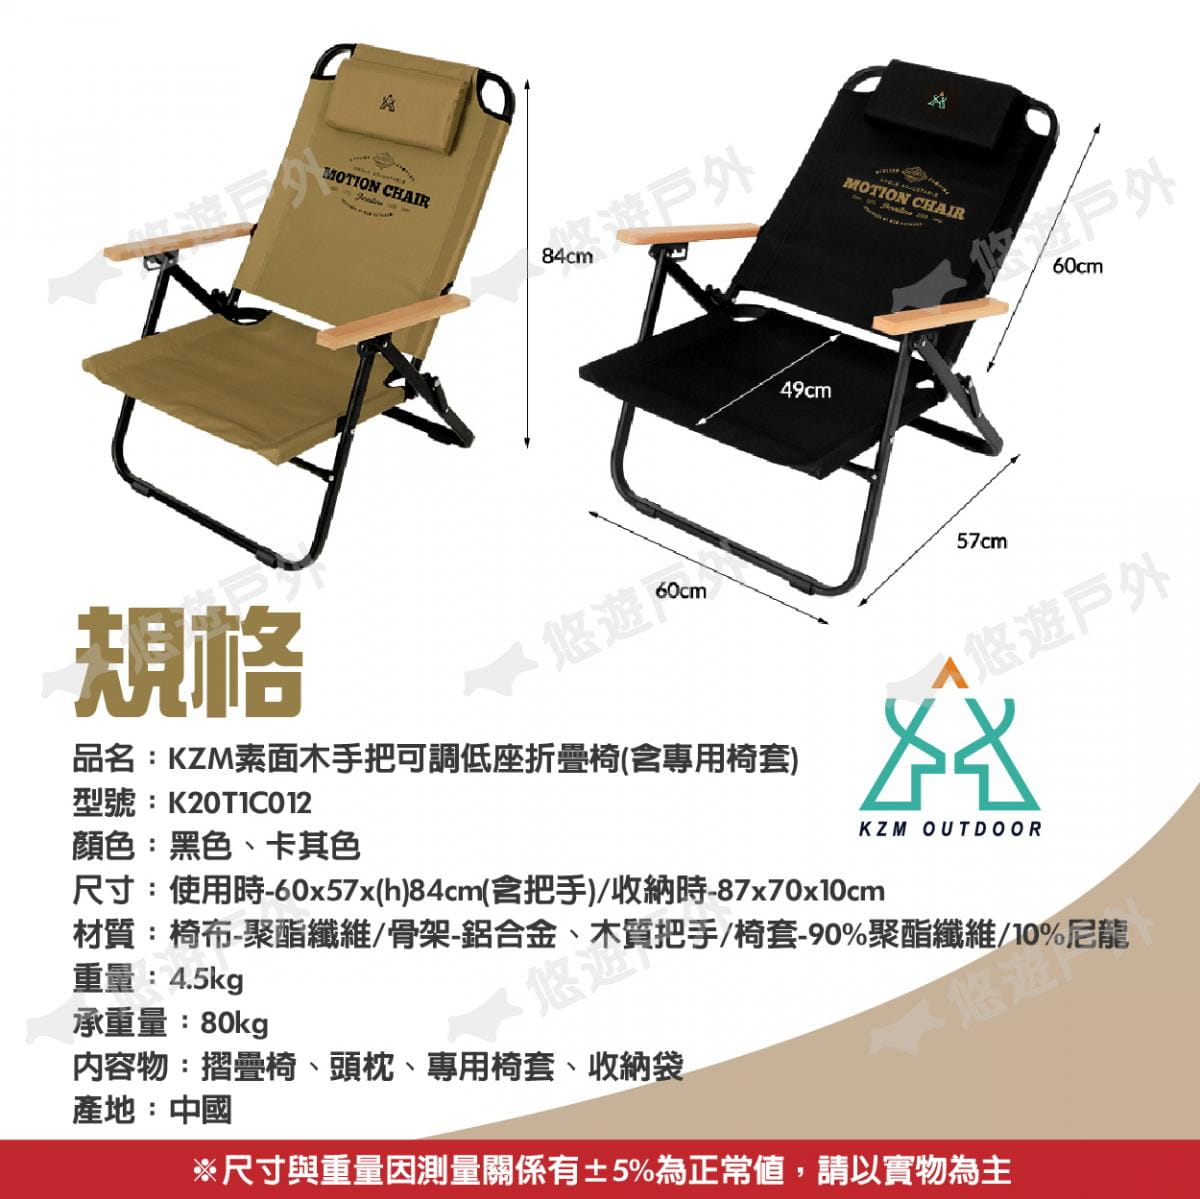 【KZM】素面木手把可調低座折疊椅_K20T1C012 (悠遊戶外) 10